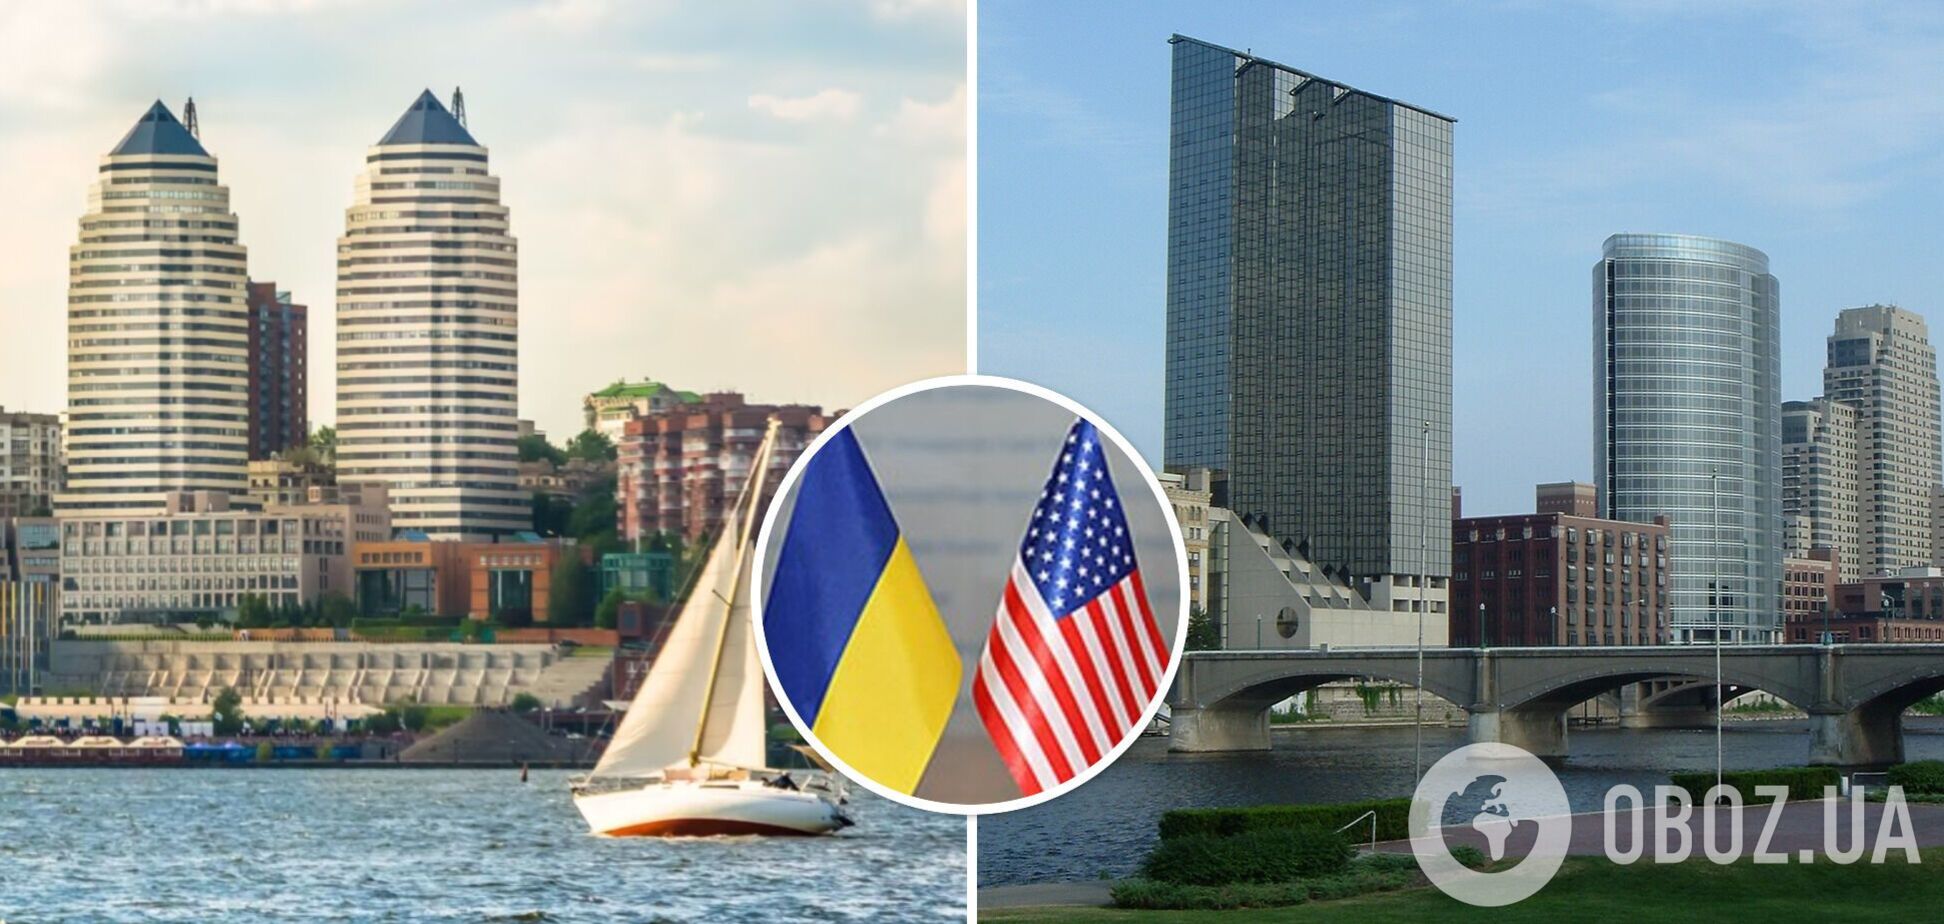 Украинский Днепр и американский Гранд-Рэпидс официально объявили о дружбе между городами